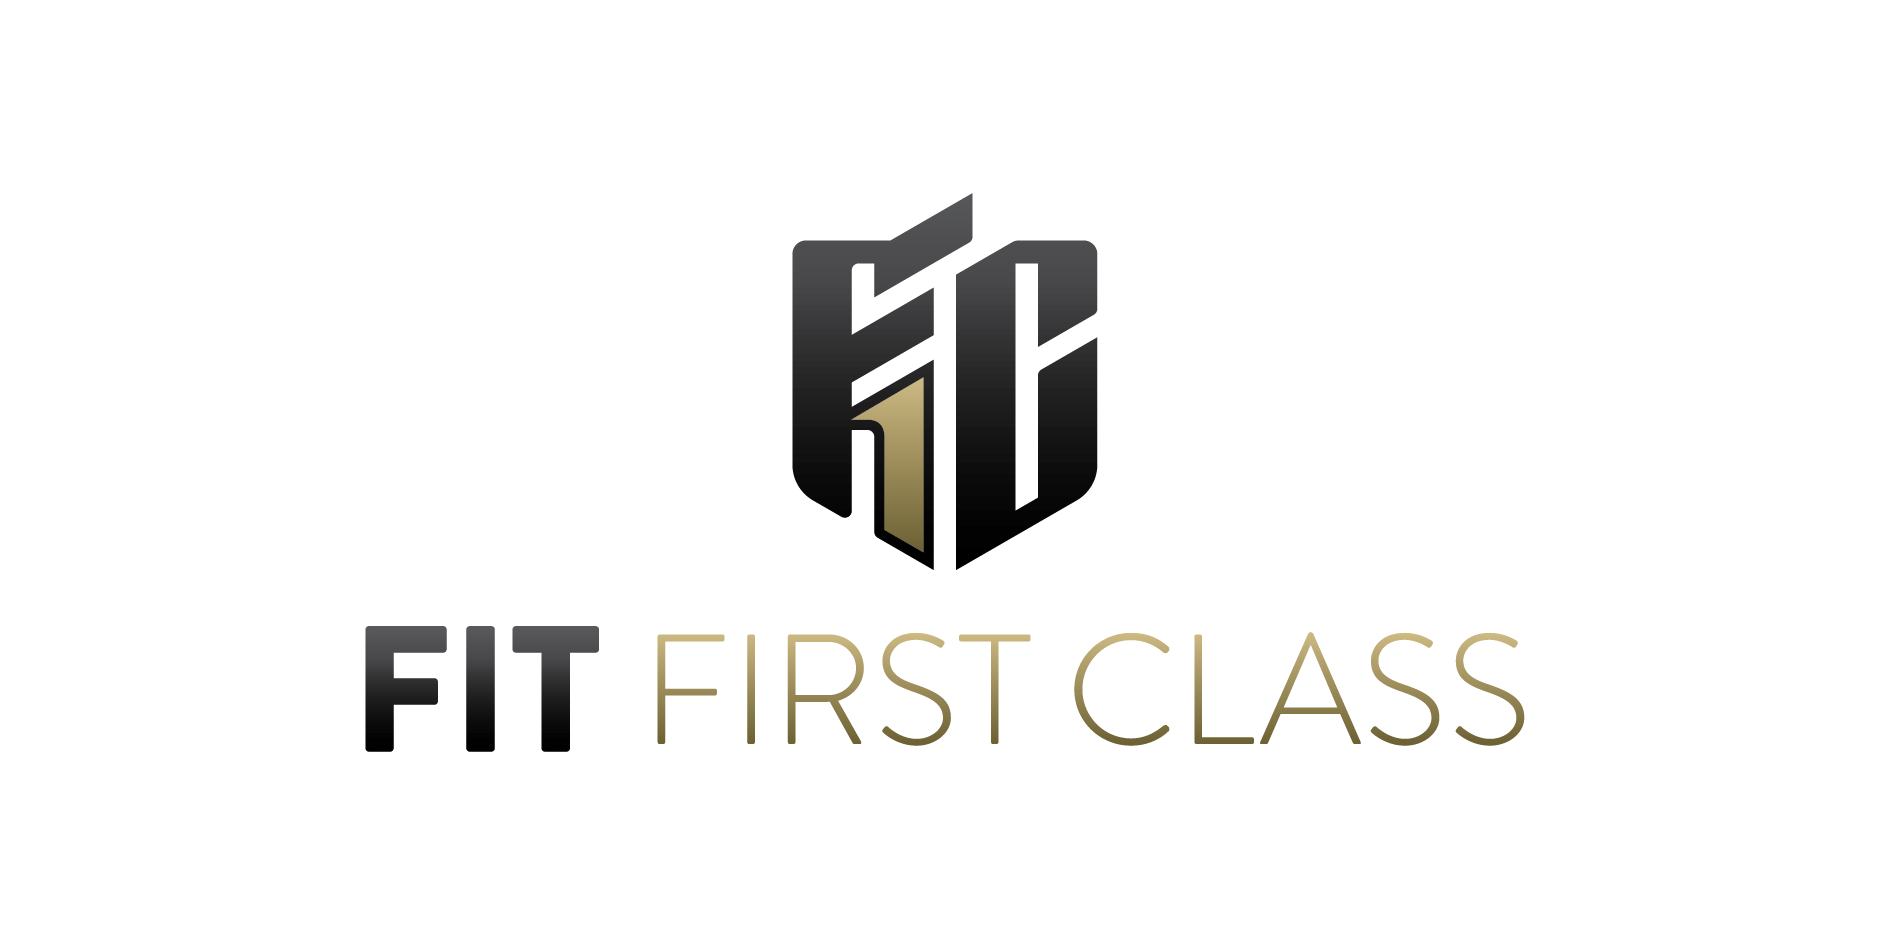 Fitter first. First class логотипы. Коуч логотип. Ферст класс эмблема. First class logo.